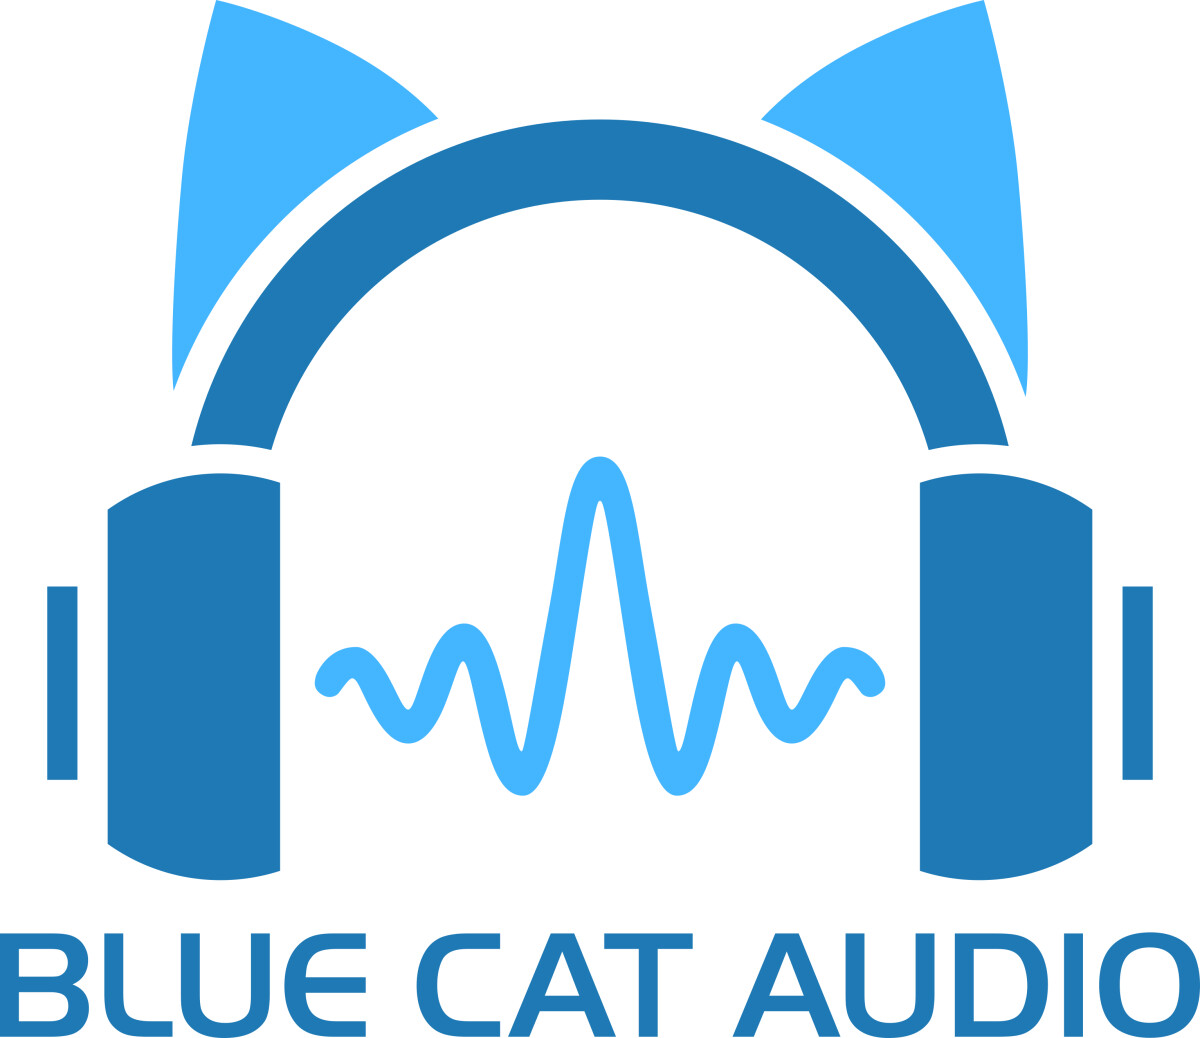 Massive updates at Blue Cat Audio